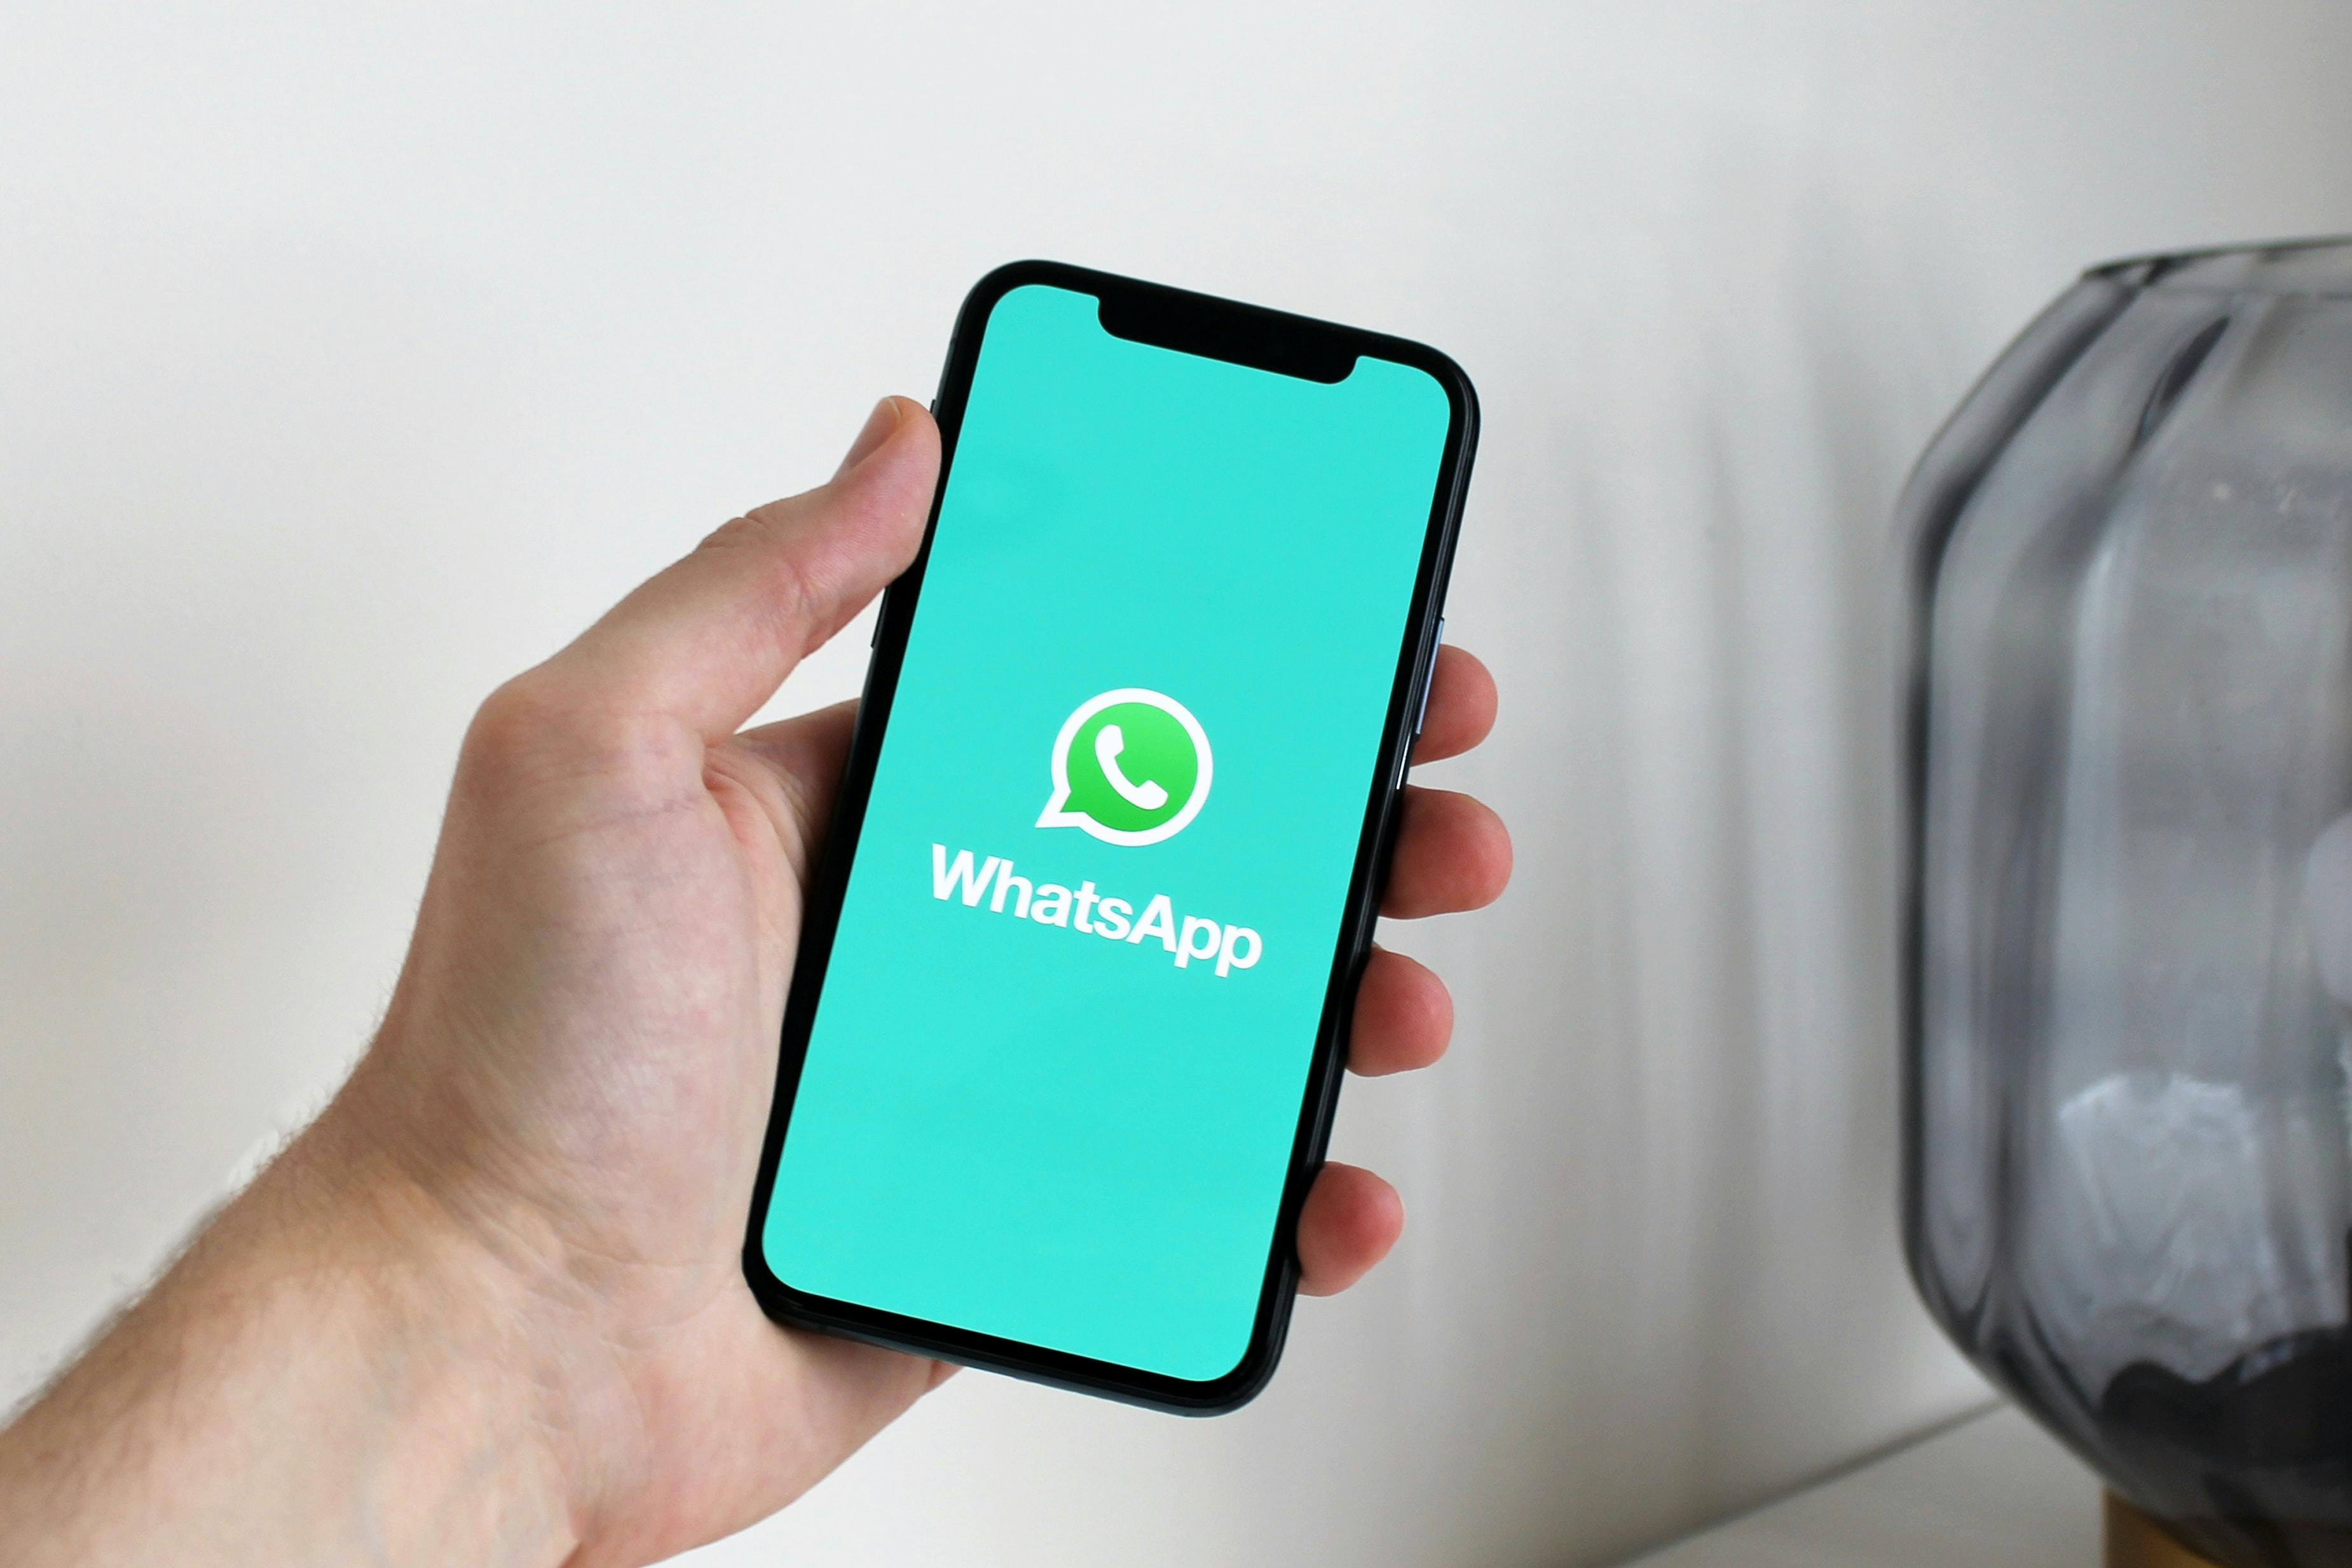 Qualifique leads no WhatsApp com os chatbots do SleekFlow